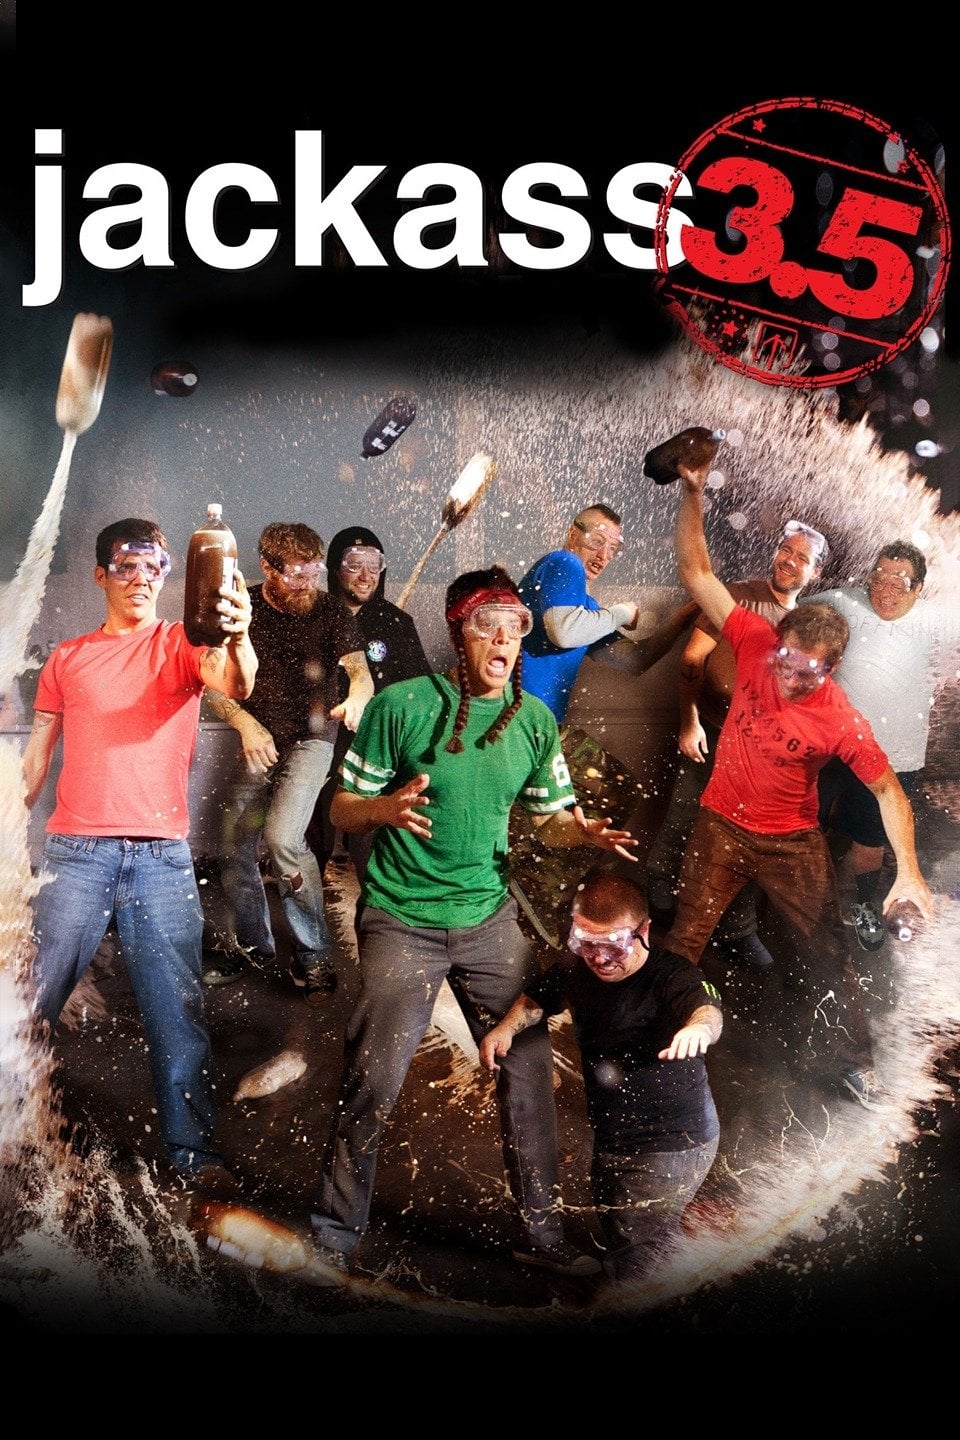 Jackass 3.5 (Jackass 3.5) [2011]